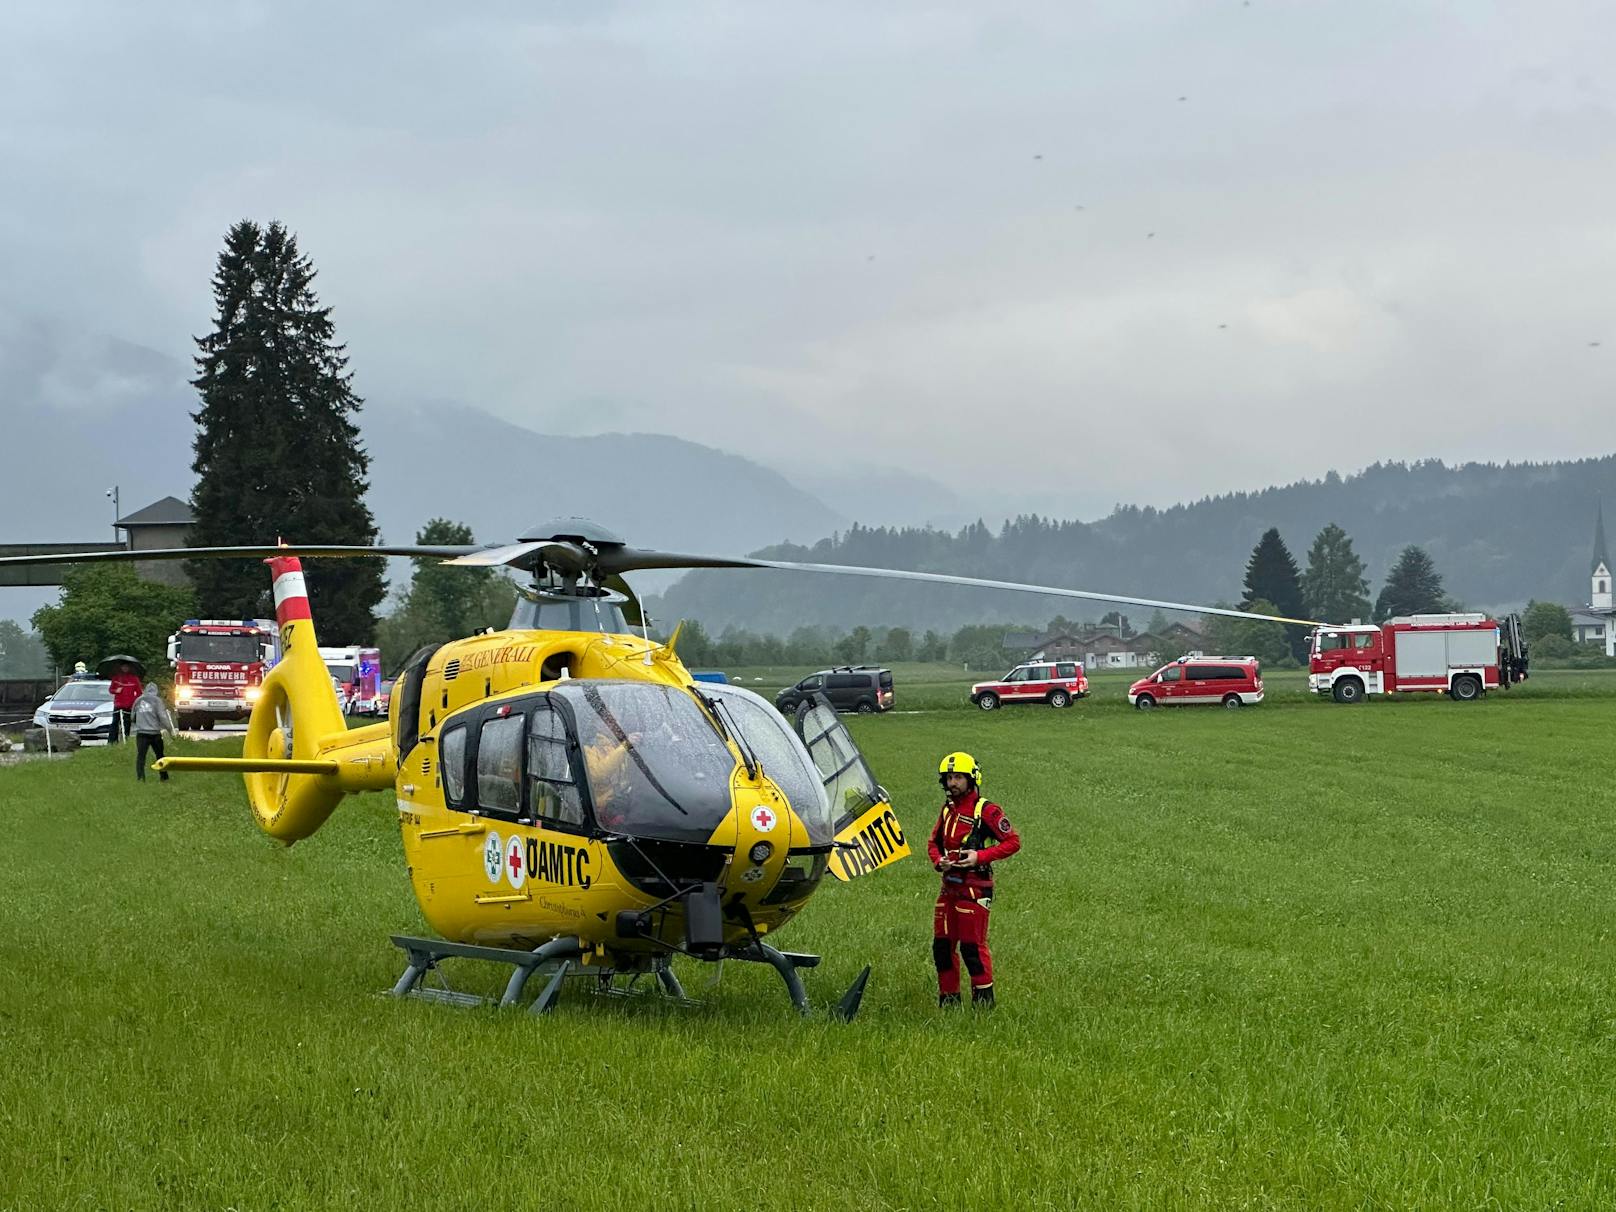 Tragödie am Dienstag in Tirol! Aus bislang ungeklärter Ursache ist ein Autofahrer in den Inn gestürzt – für den Mann kam jede Hilfe zu spät. Die Ermittlungen laufen auf Hochtouren.